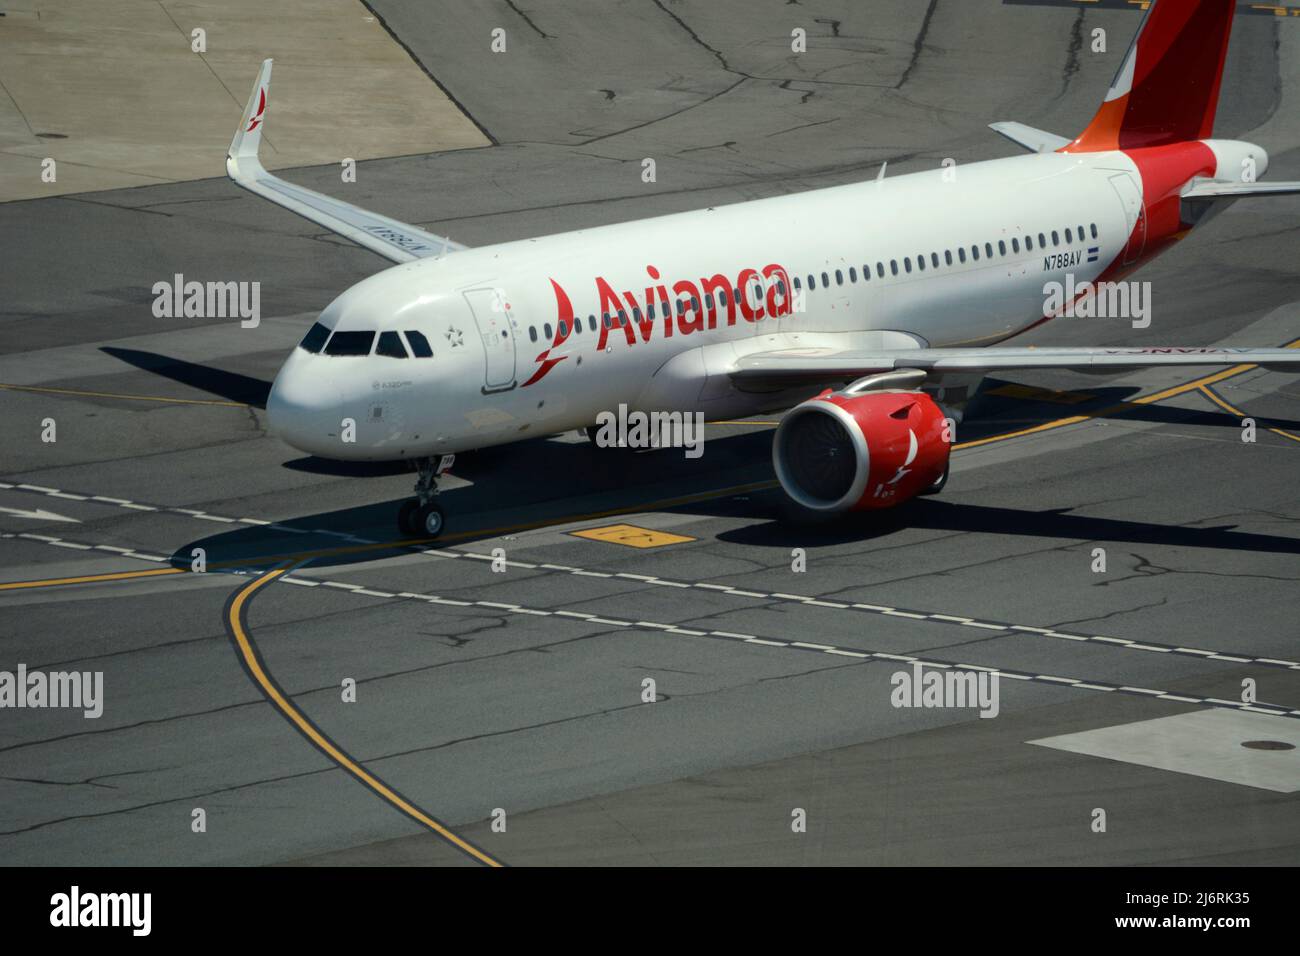 Un avion-taxi Avianca Airlines Airbus A320 passagers à l'aéroport international de San Francisco, en Californie. Banque D'Images